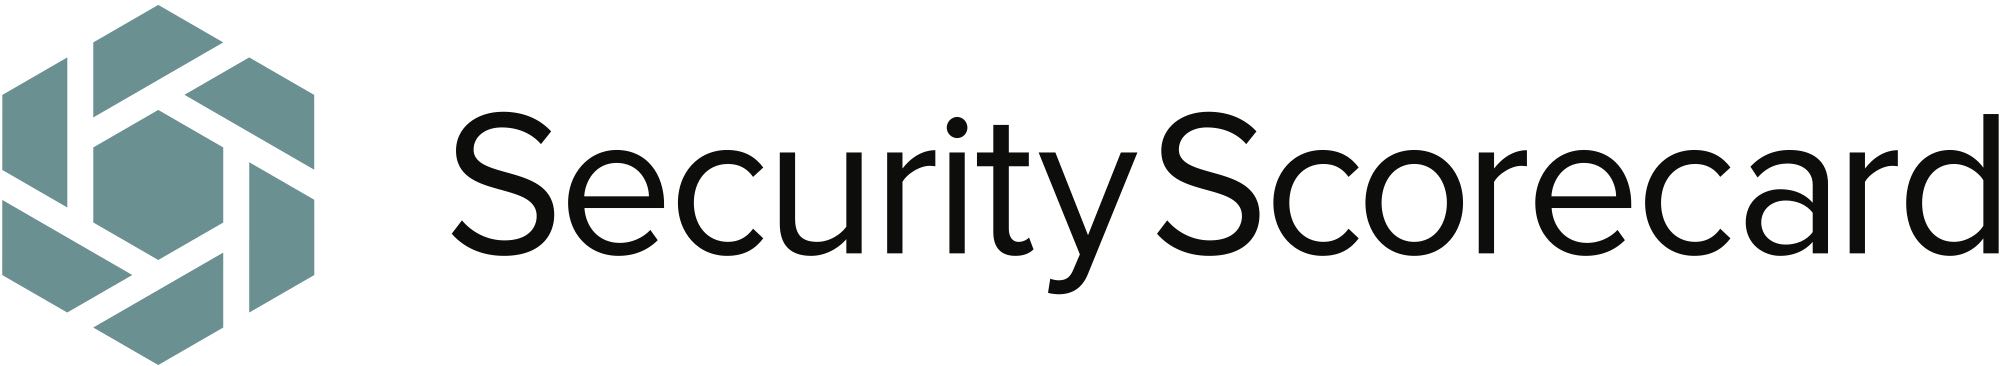 SecurityScorecard.jpg